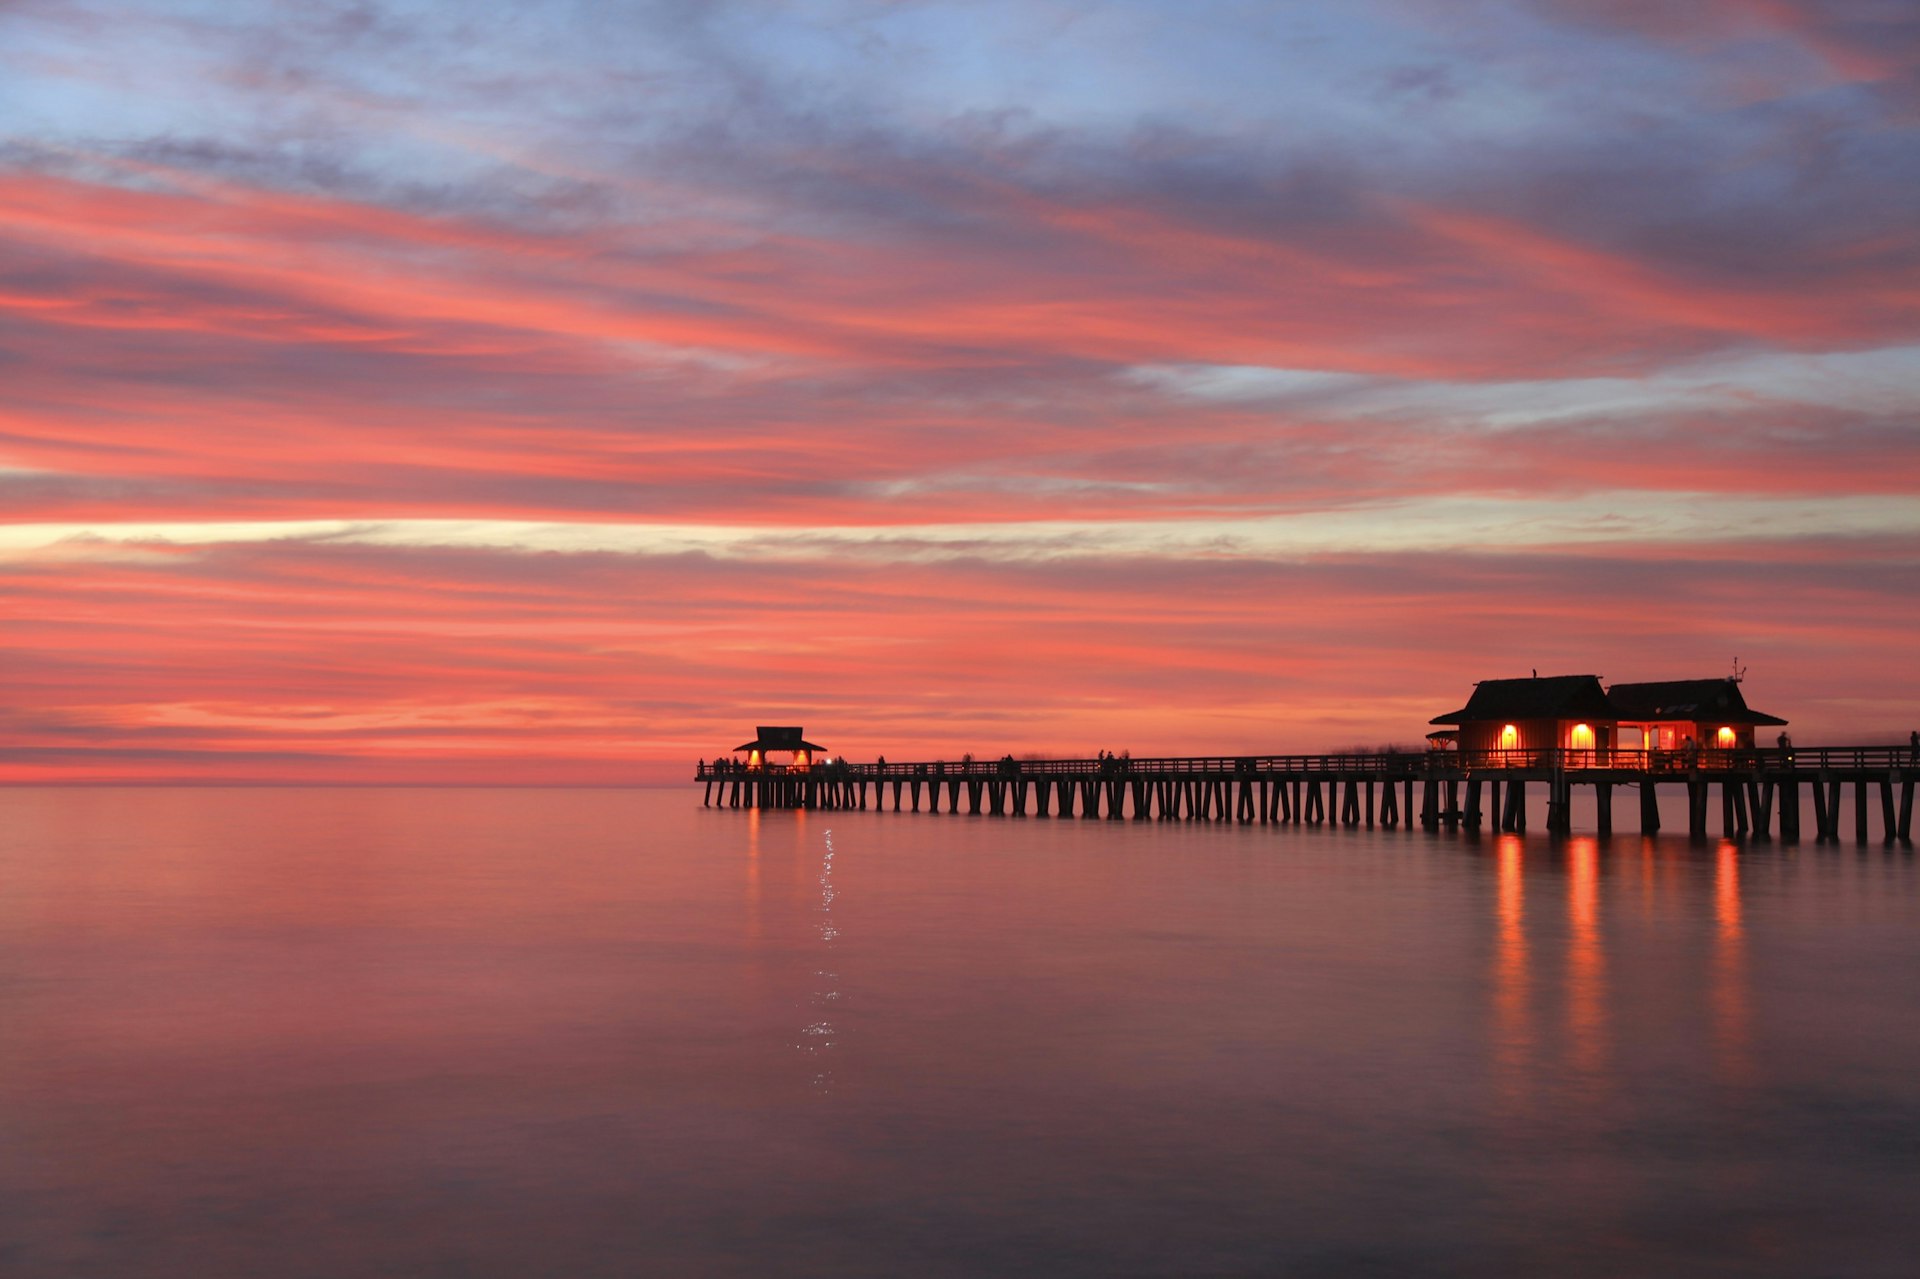 Piren i Naples, Florida ses vid solnedgången på ett lugnt hav